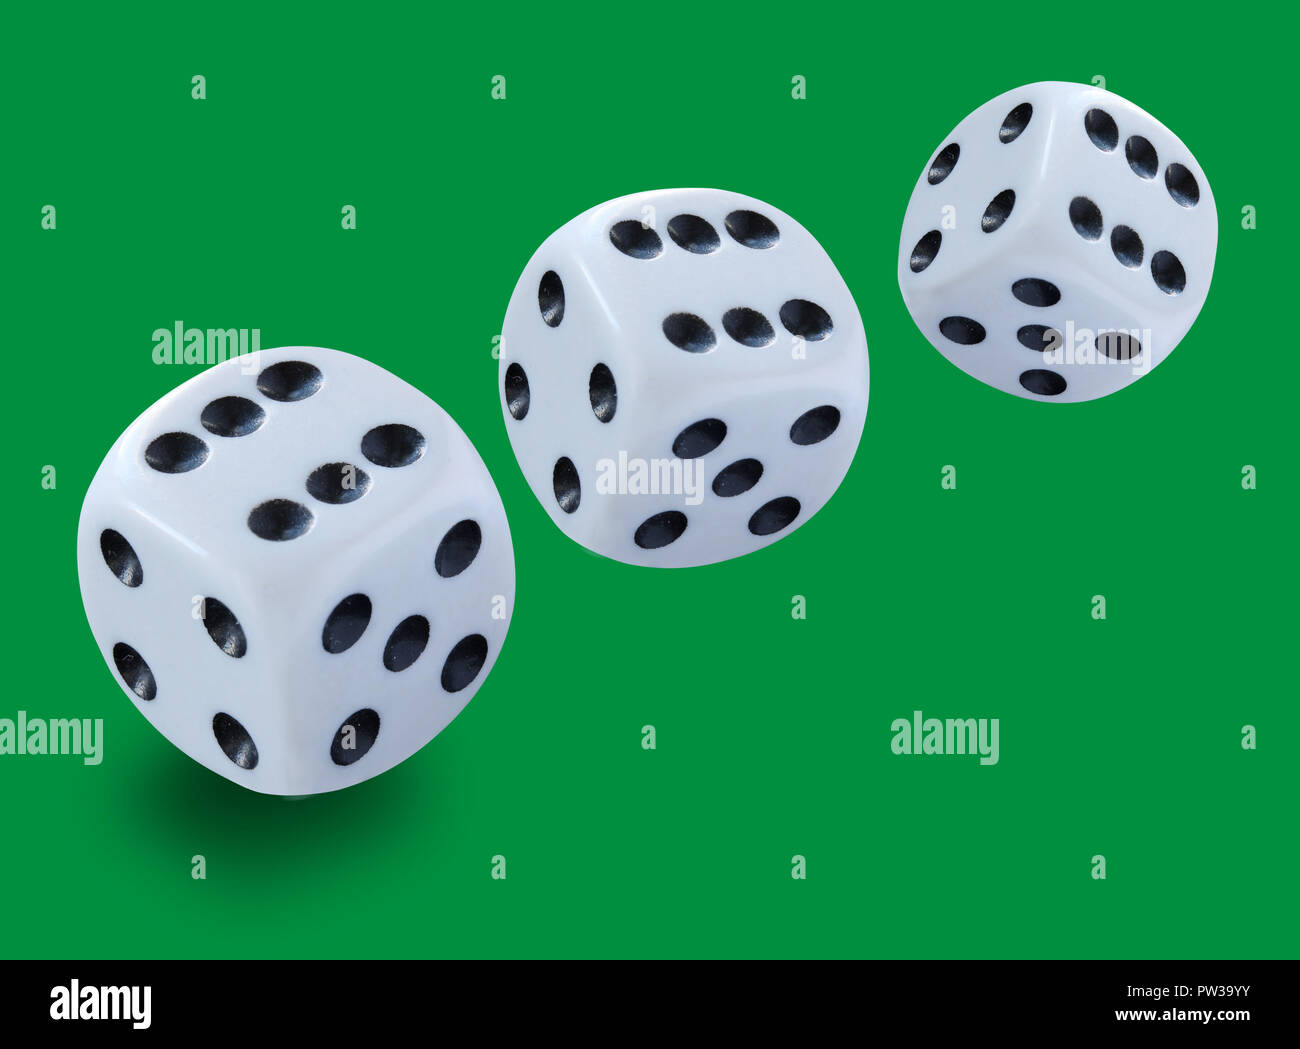 Drei weisse Würfel unterschiedlicher Größe in einem Craps Spiel Yahtzee oder jede Art von würfelspiel vor einem grünen Hintergrund geworfen Stockfoto